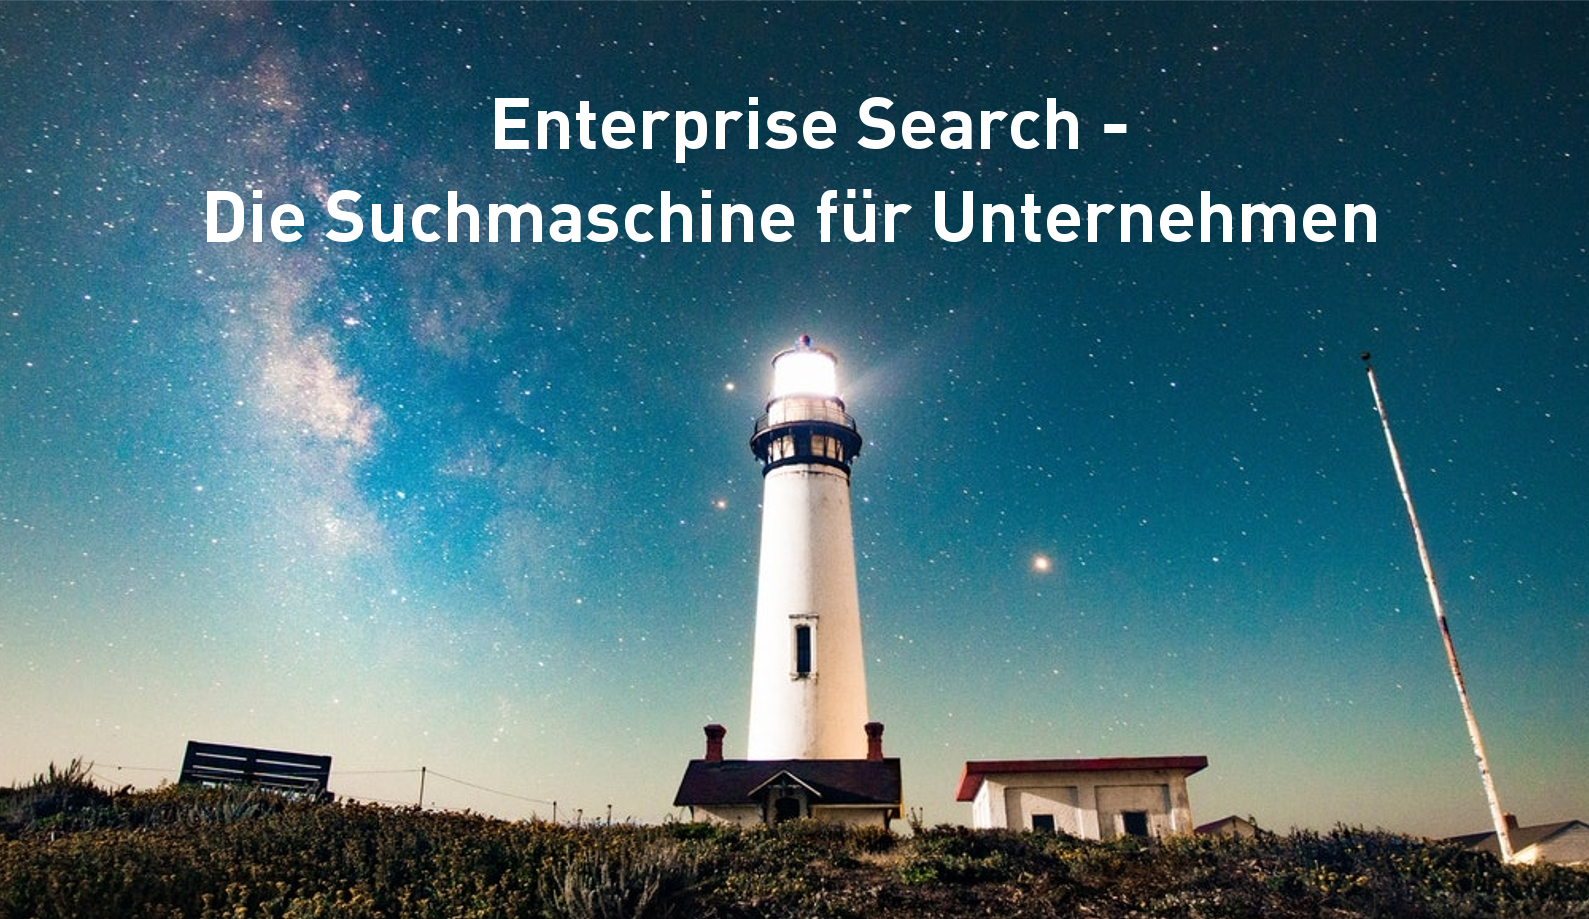 Enterprise Search - Die unternehmensinterne Googlesuche